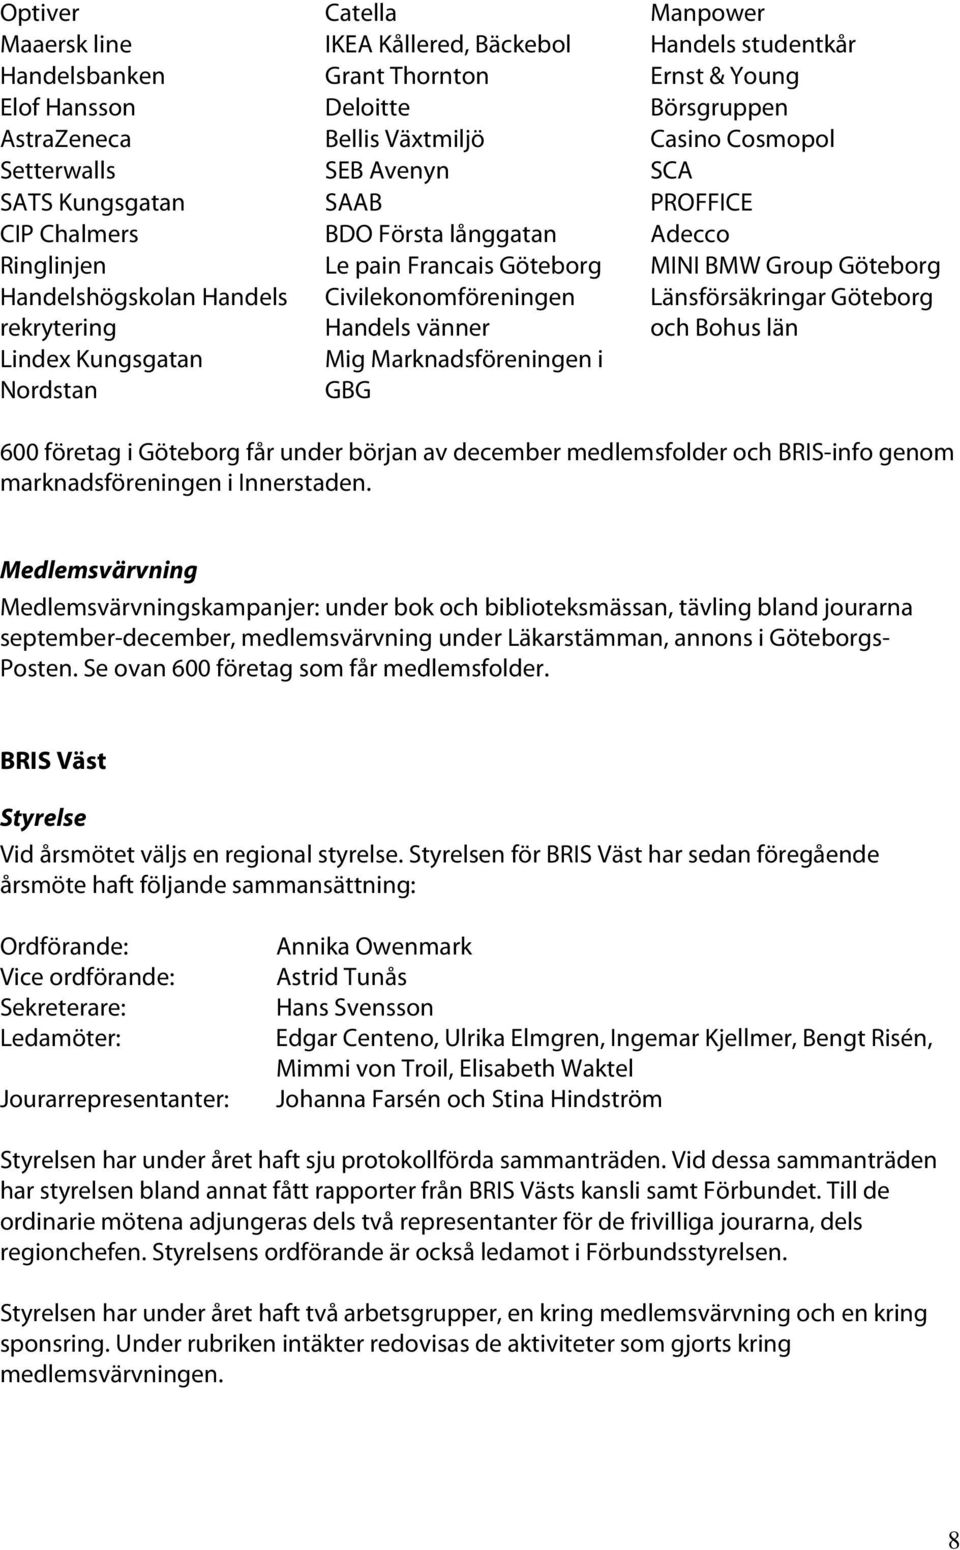 rekrytering Lindex Kungsgatan Nordstan Civilekonomföreningen Handels vänner Mig Marknadsföreningen i GBG Länsförsäkringar Göteborg och Bohus län 600 företag i Göteborg får under början av december